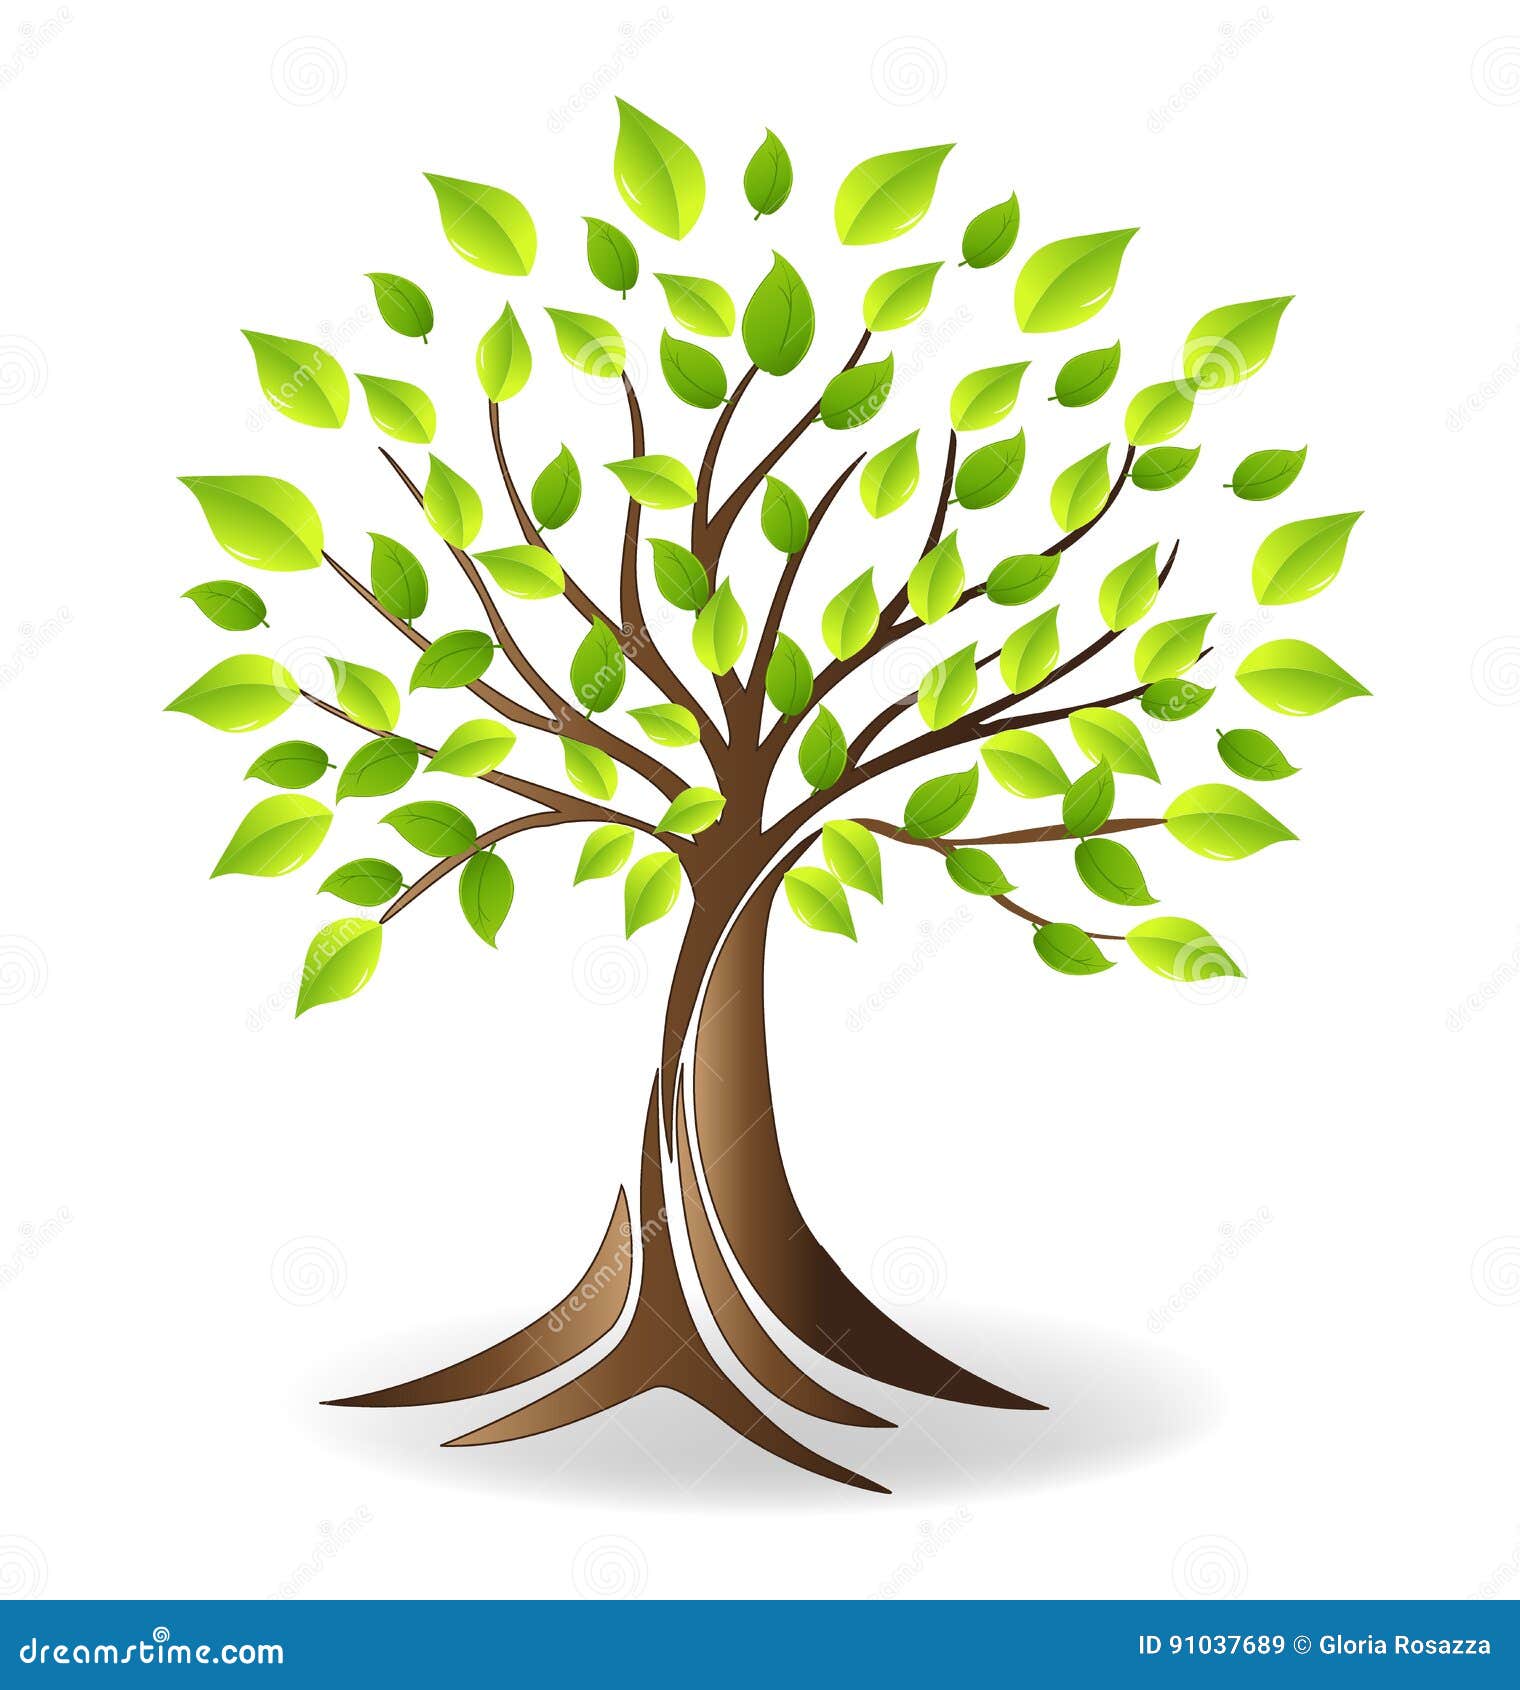 ecology family tree logo